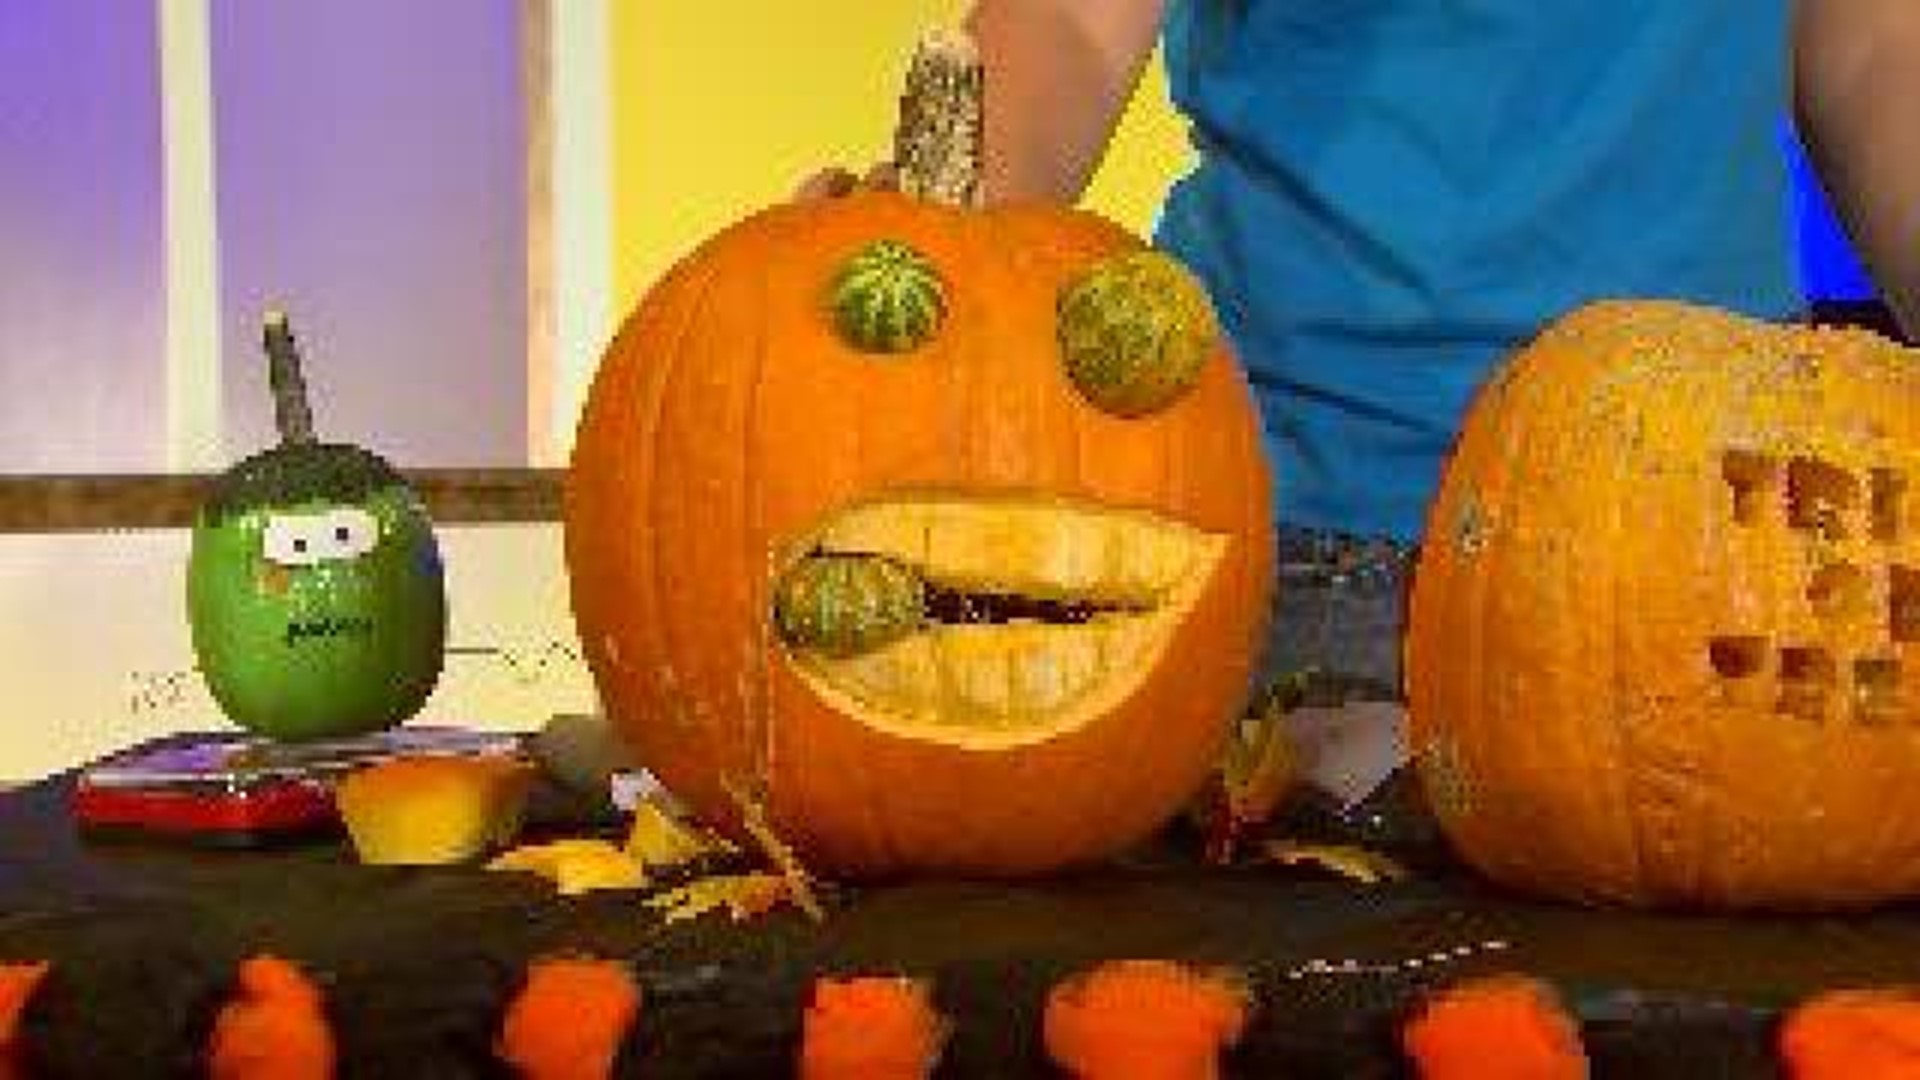 Fun Pumpkin Carving Ideas